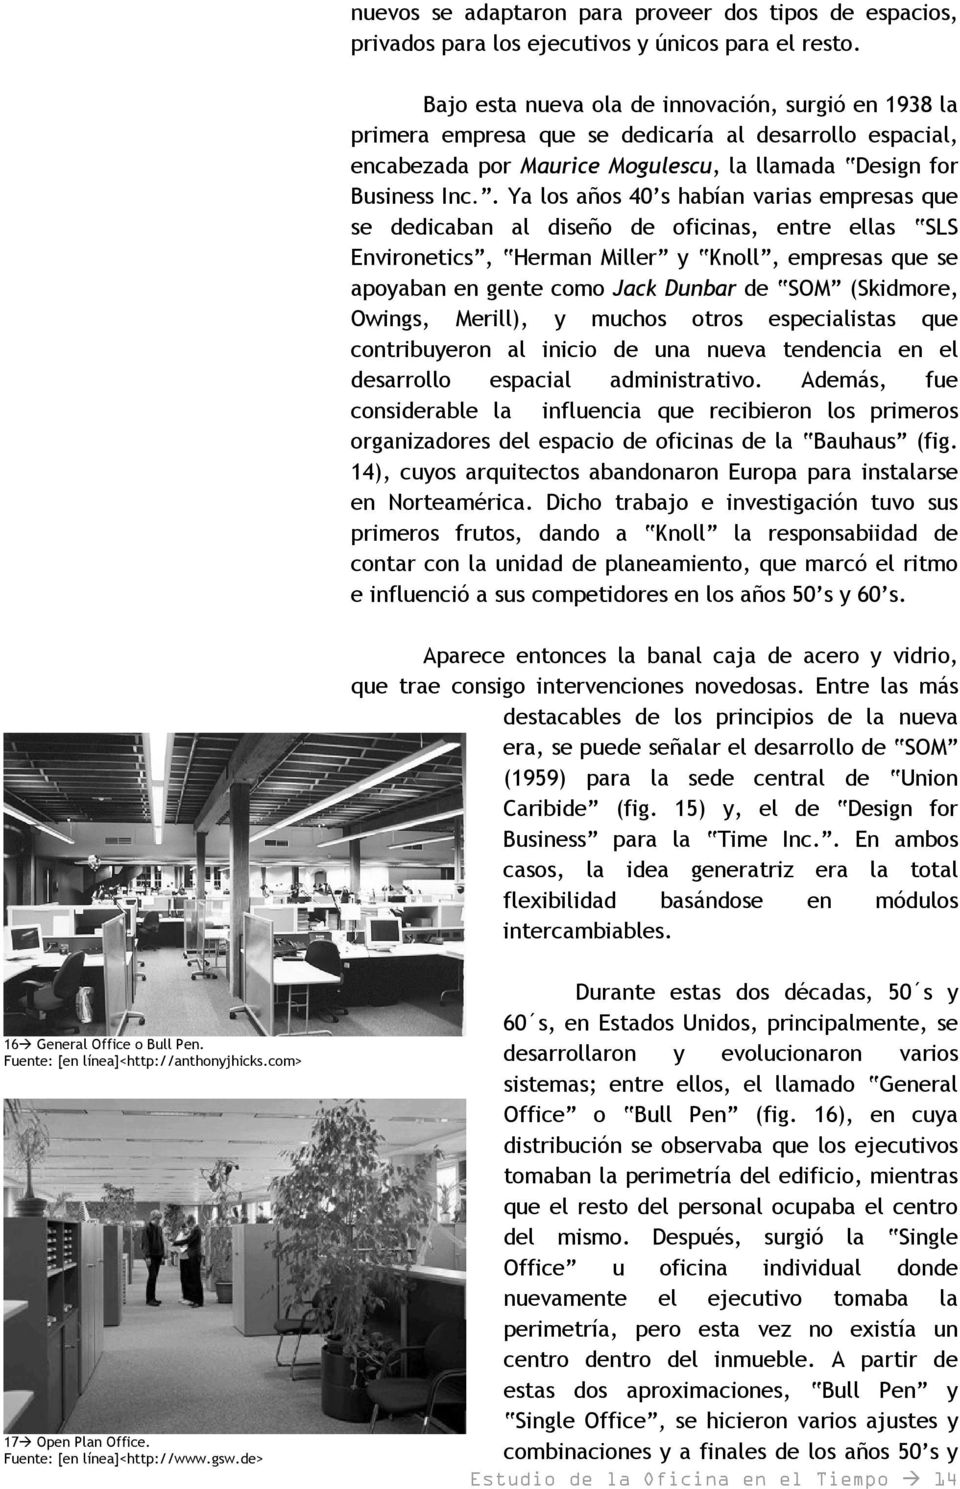 . Ya los años 40 s habían varias empresas que se dedicaban al diseño de oficinas, entre ellas SLS Environetics, Herman Miller y Knoll, empresas que se apoyaban en gente como Jack Dunbar de SOM